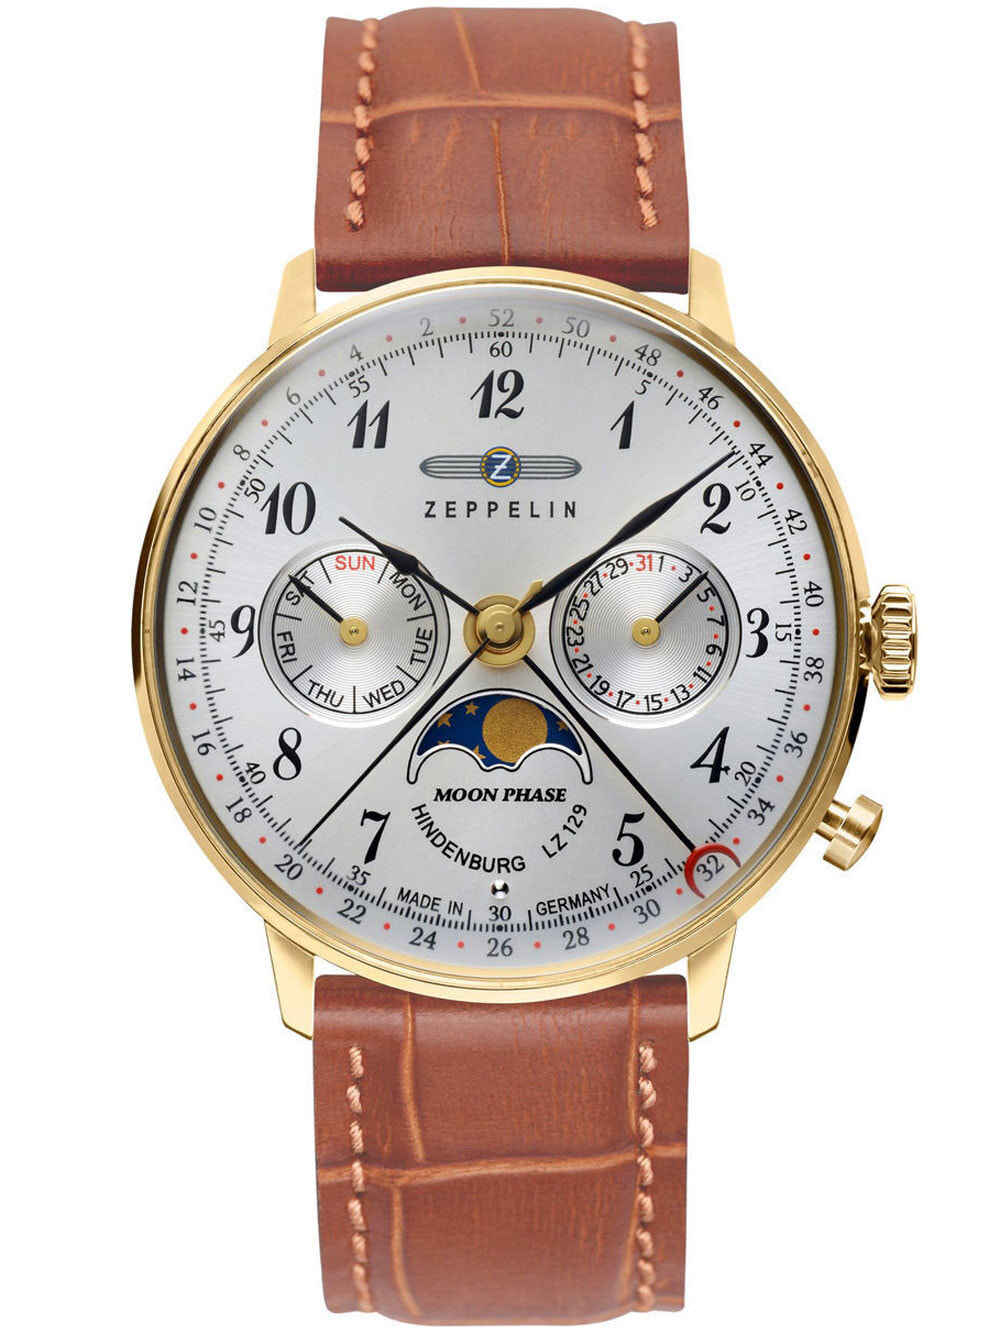 Мужские наручные часы с черным коричневым ремешком Zeppelin 7039-1 Hindenburg Moonphase 3 ATM 36 mm